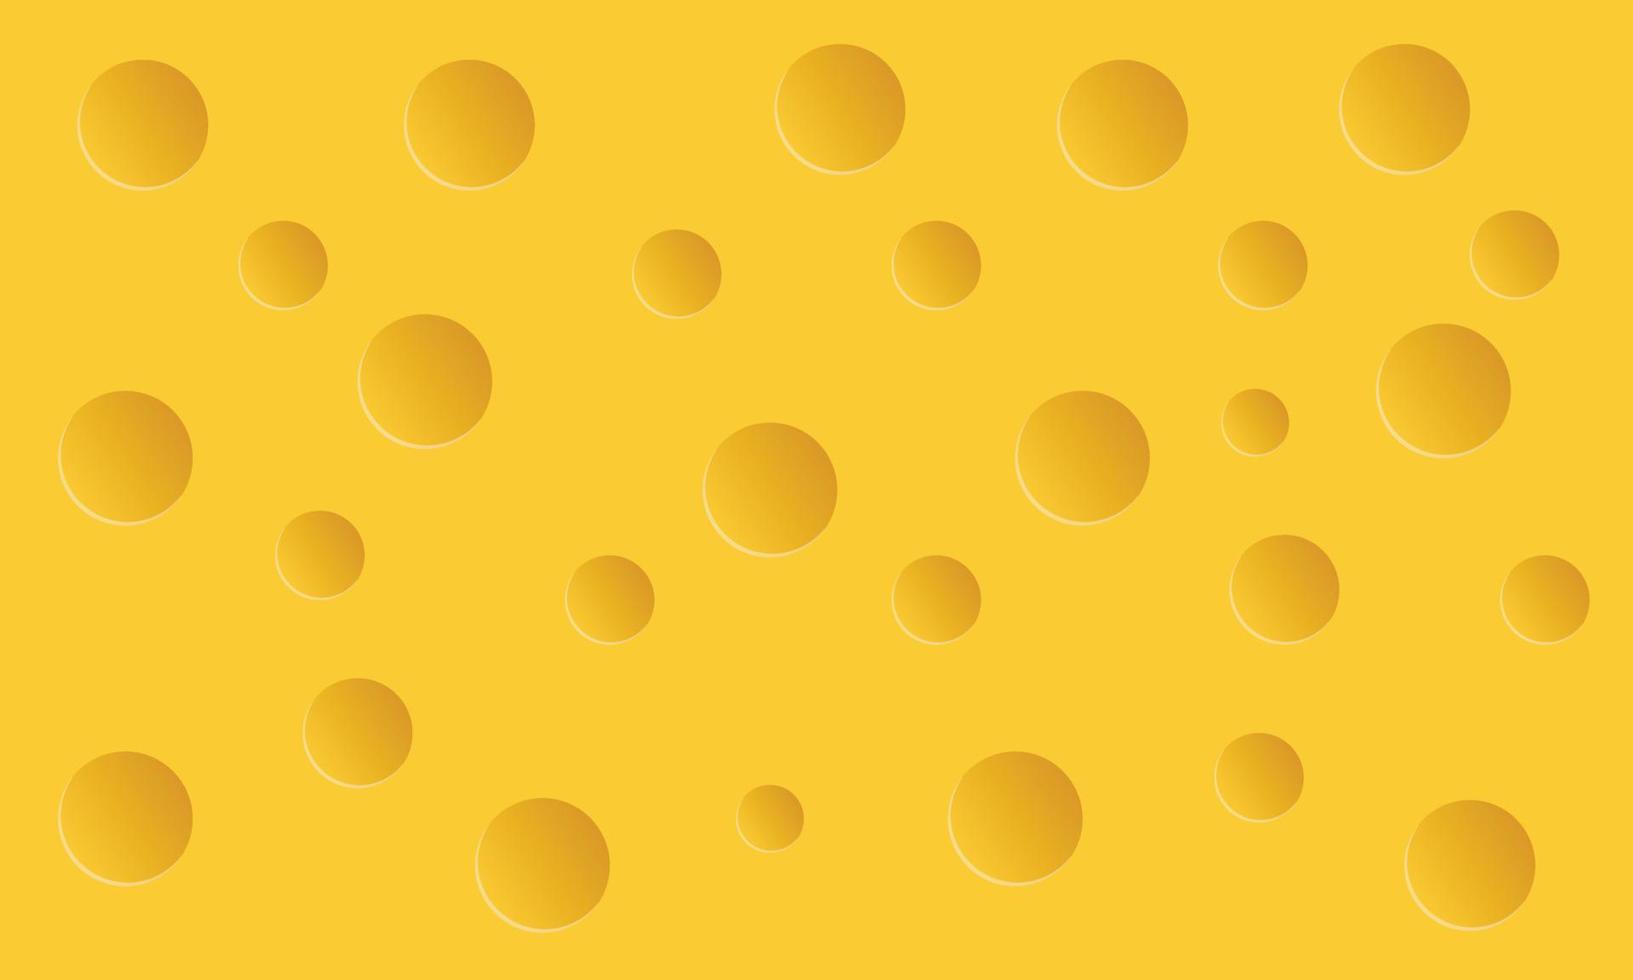 conception de fond de fromage jaune. vecteur eps10